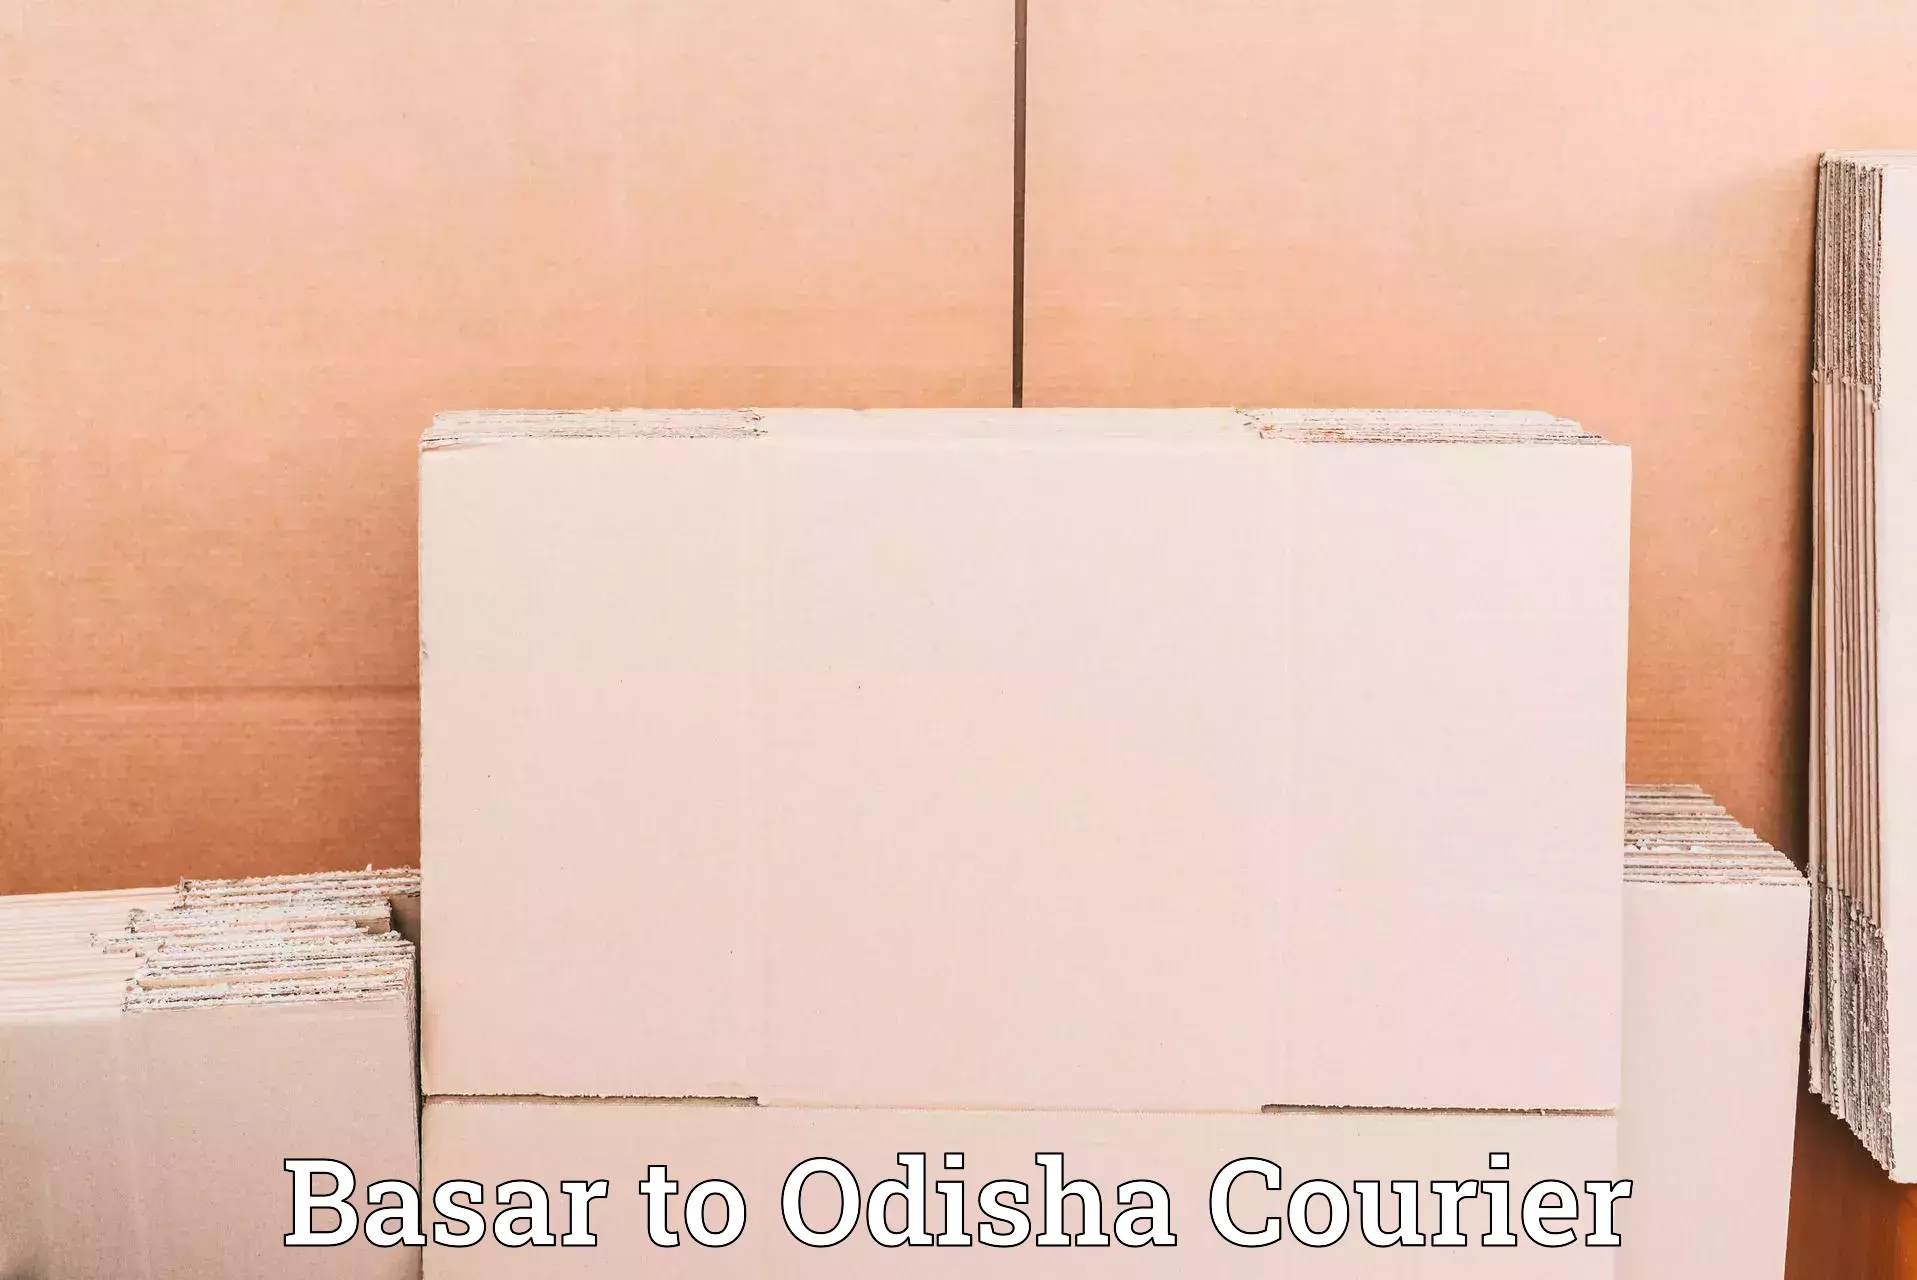 Reliable shipping partners Basar to Odisha